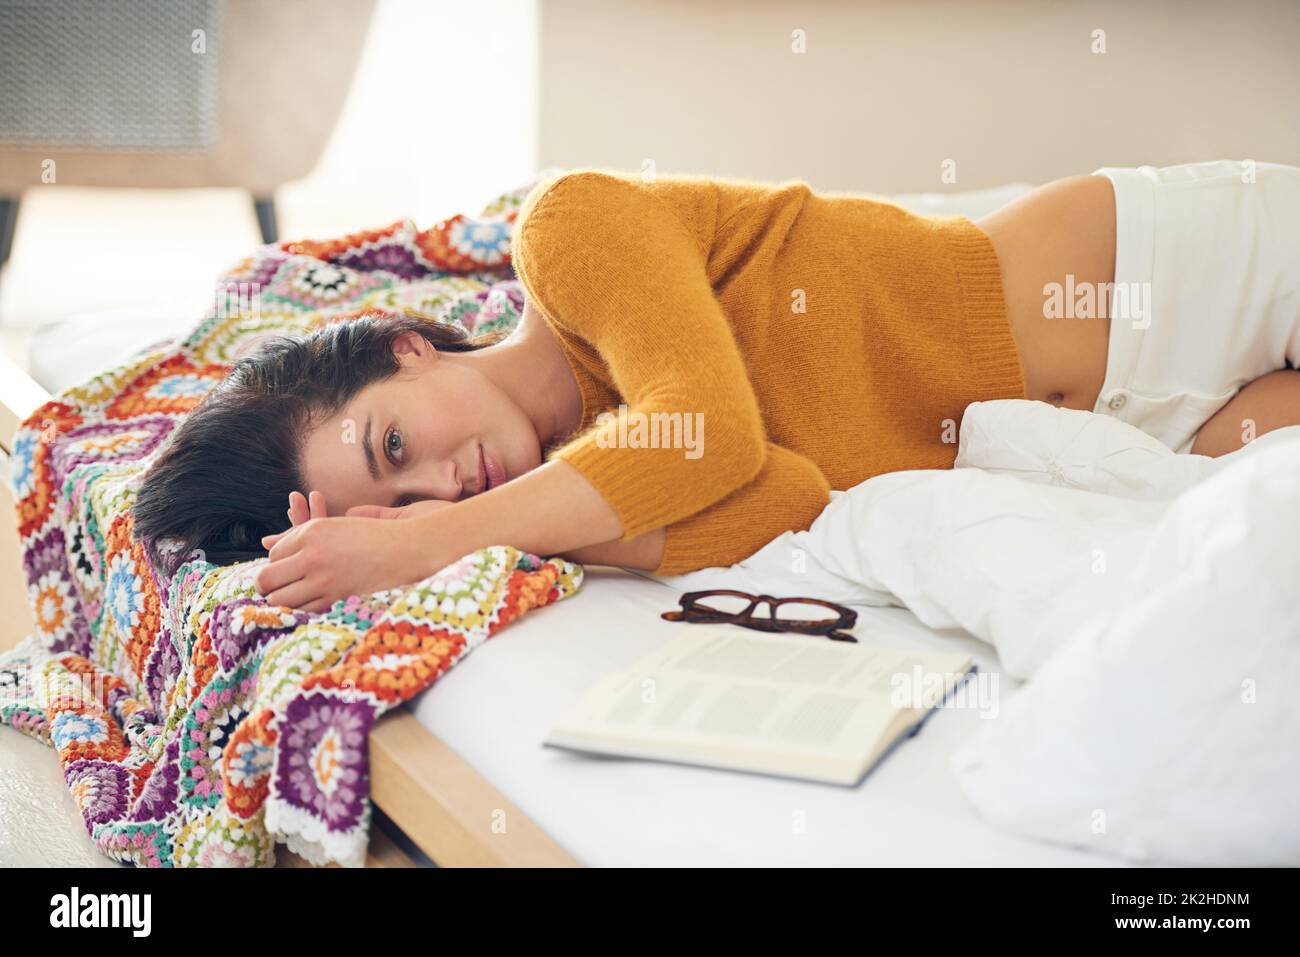 Eine Pause von einer guten Lektüre machen. Beschnittenes Porträt einer jungen Frau, die neben Lesematerial auf ihrem Bett liegt. Stockfoto